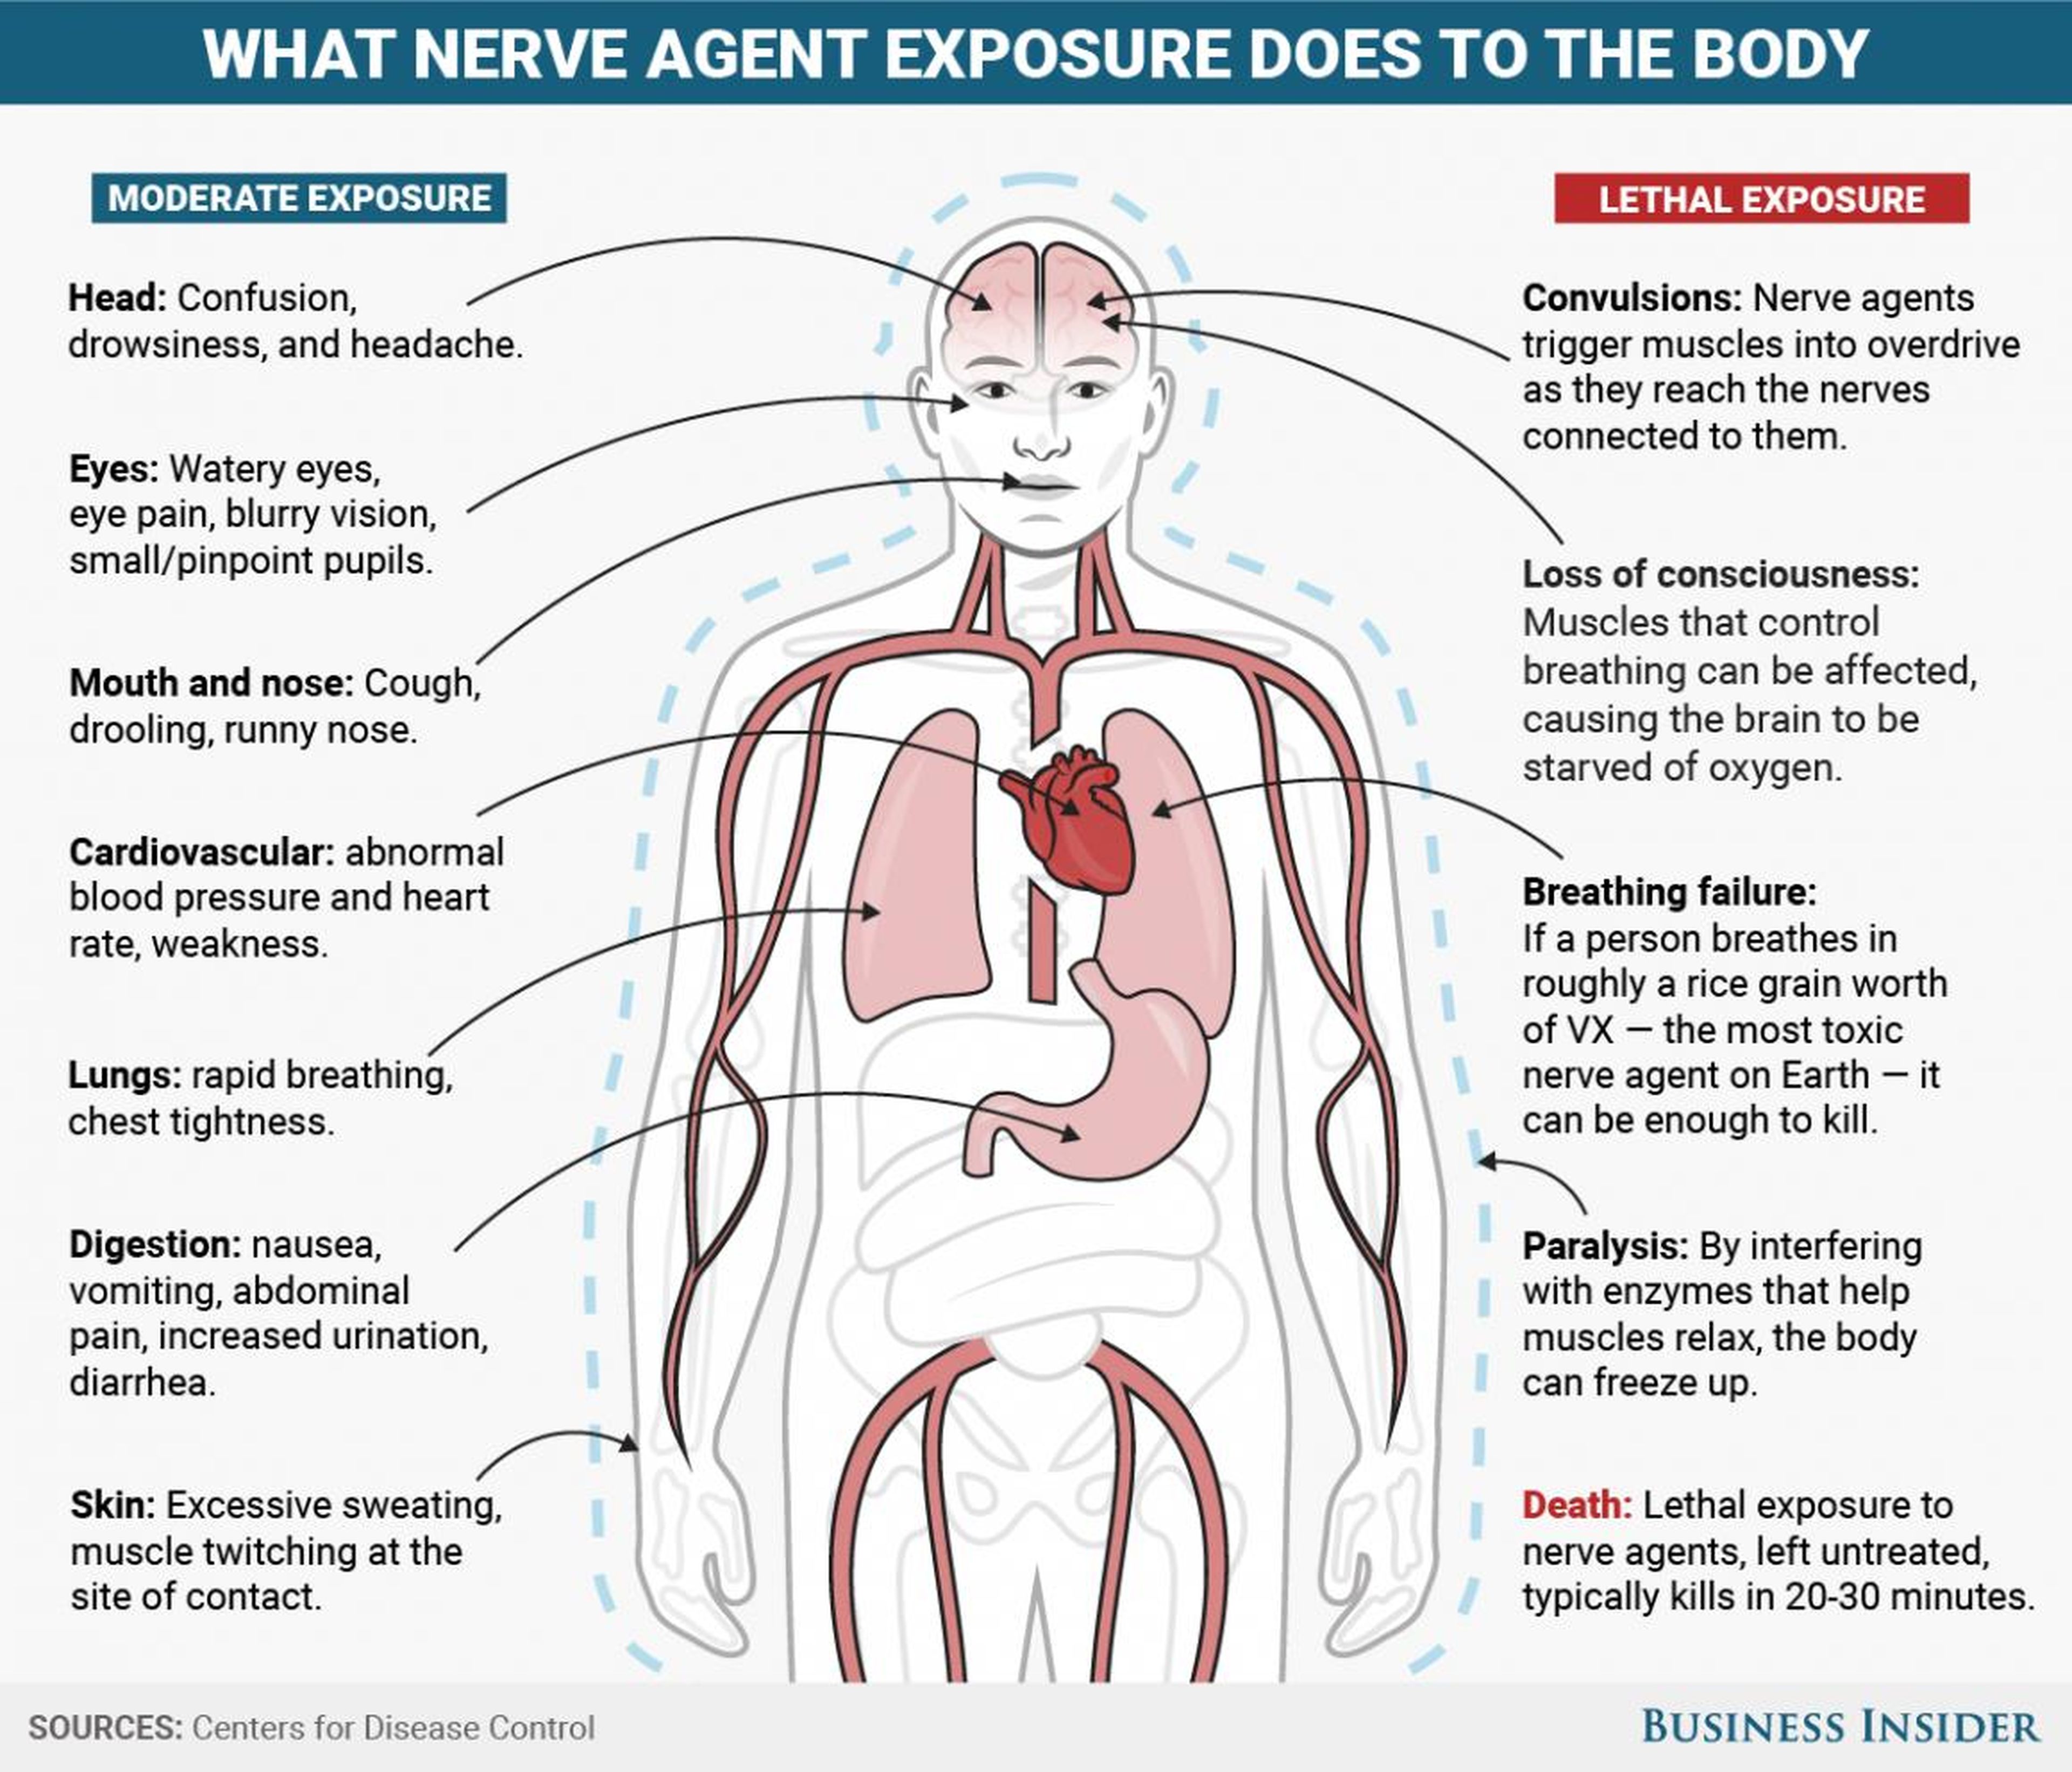 Los agentes nerviosos como el tabún, sarín, somán, GF y VX tienen efectos similares en el cuerpo, dependiendo de la ruta de exposición.